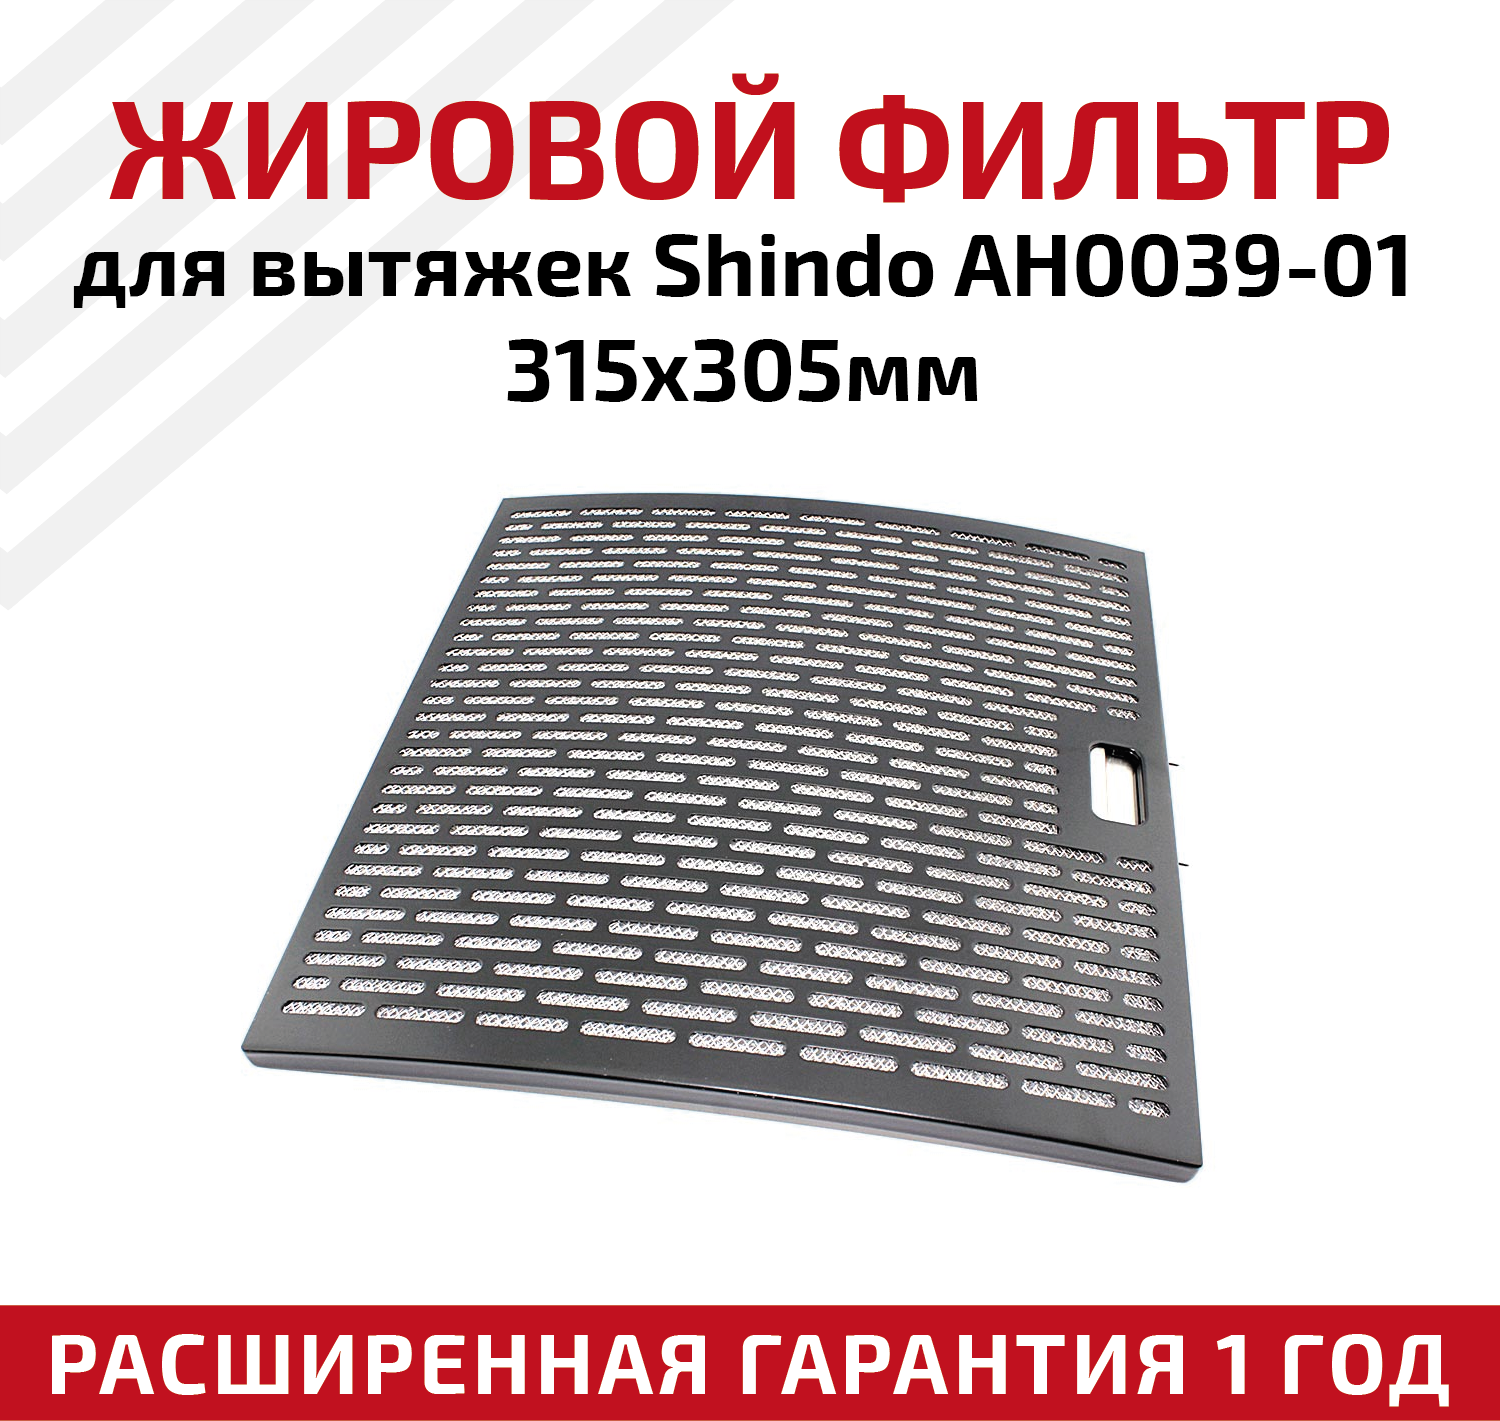 Жировой фильтр (кассета) алюминиевый (металлический) рамочный для кухонных вытяжек Shindo AH0039-01, многоразовый, 315х305мм